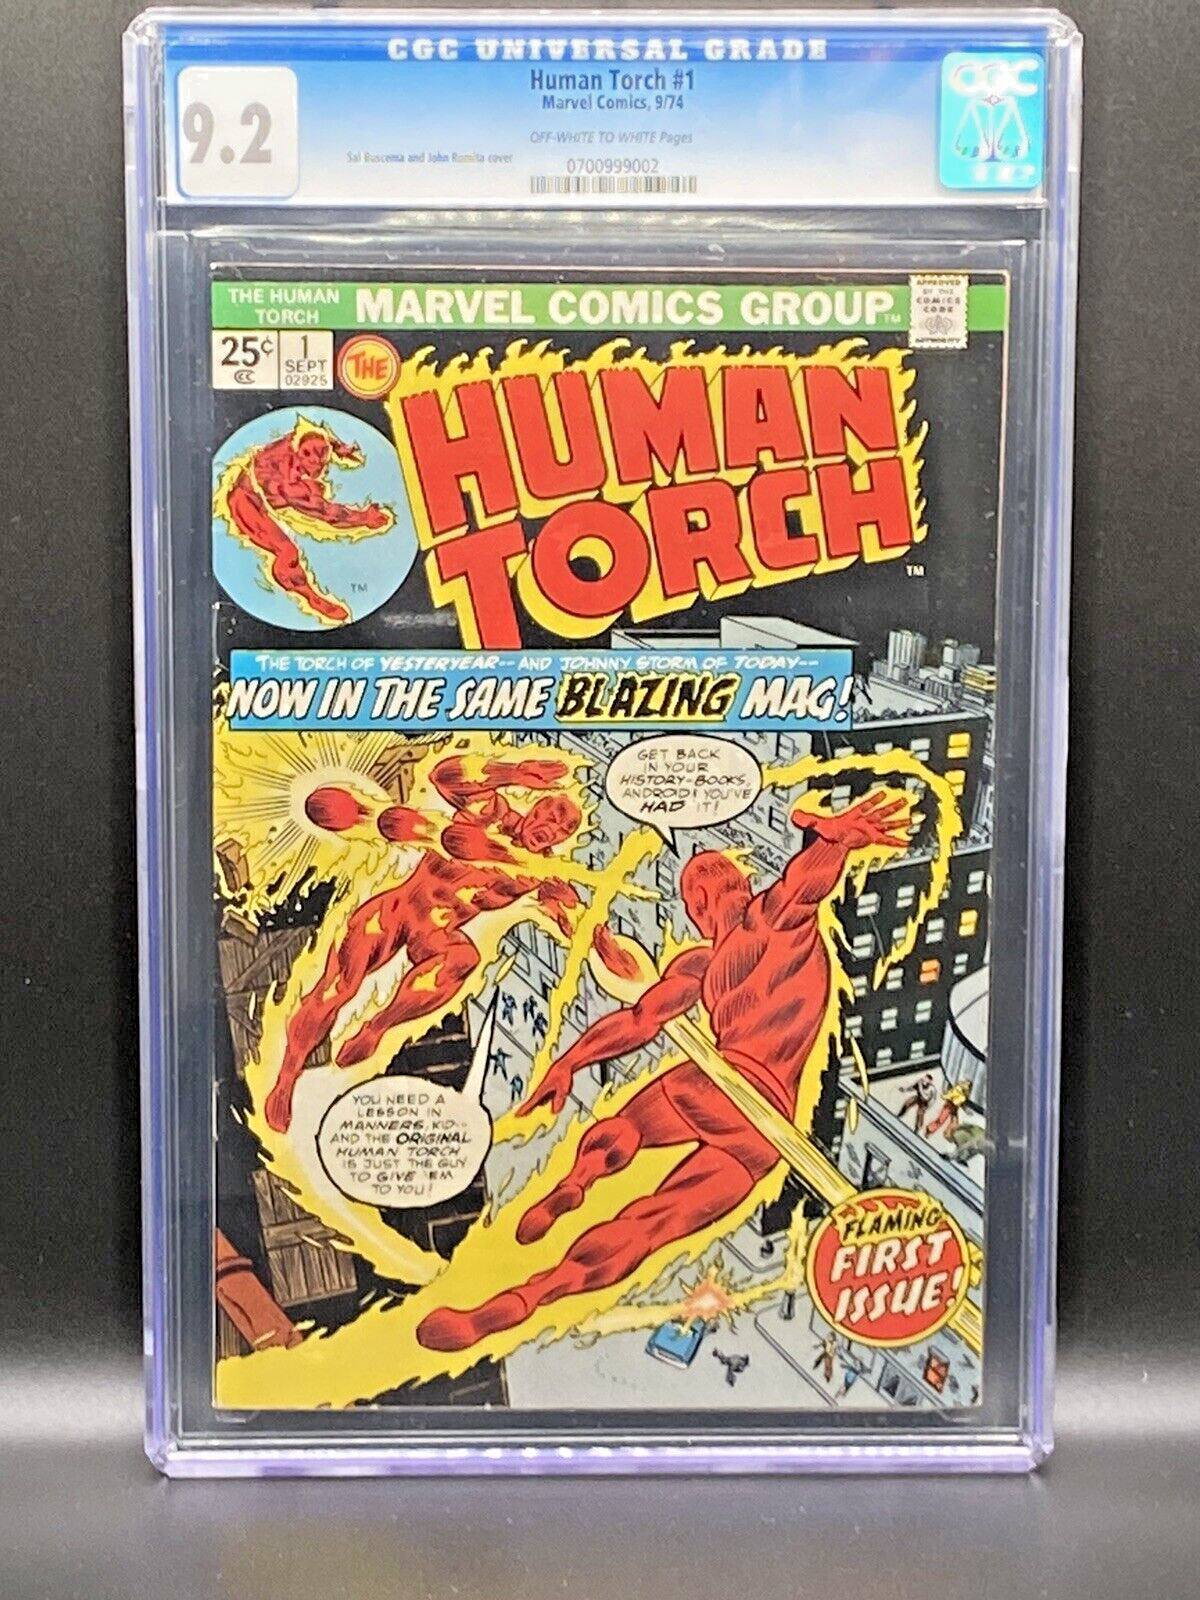 Human Torch #1 Vol 2  (1974) CGC 9.2 Classic Art from Jack Kirby/John Romita Sr.